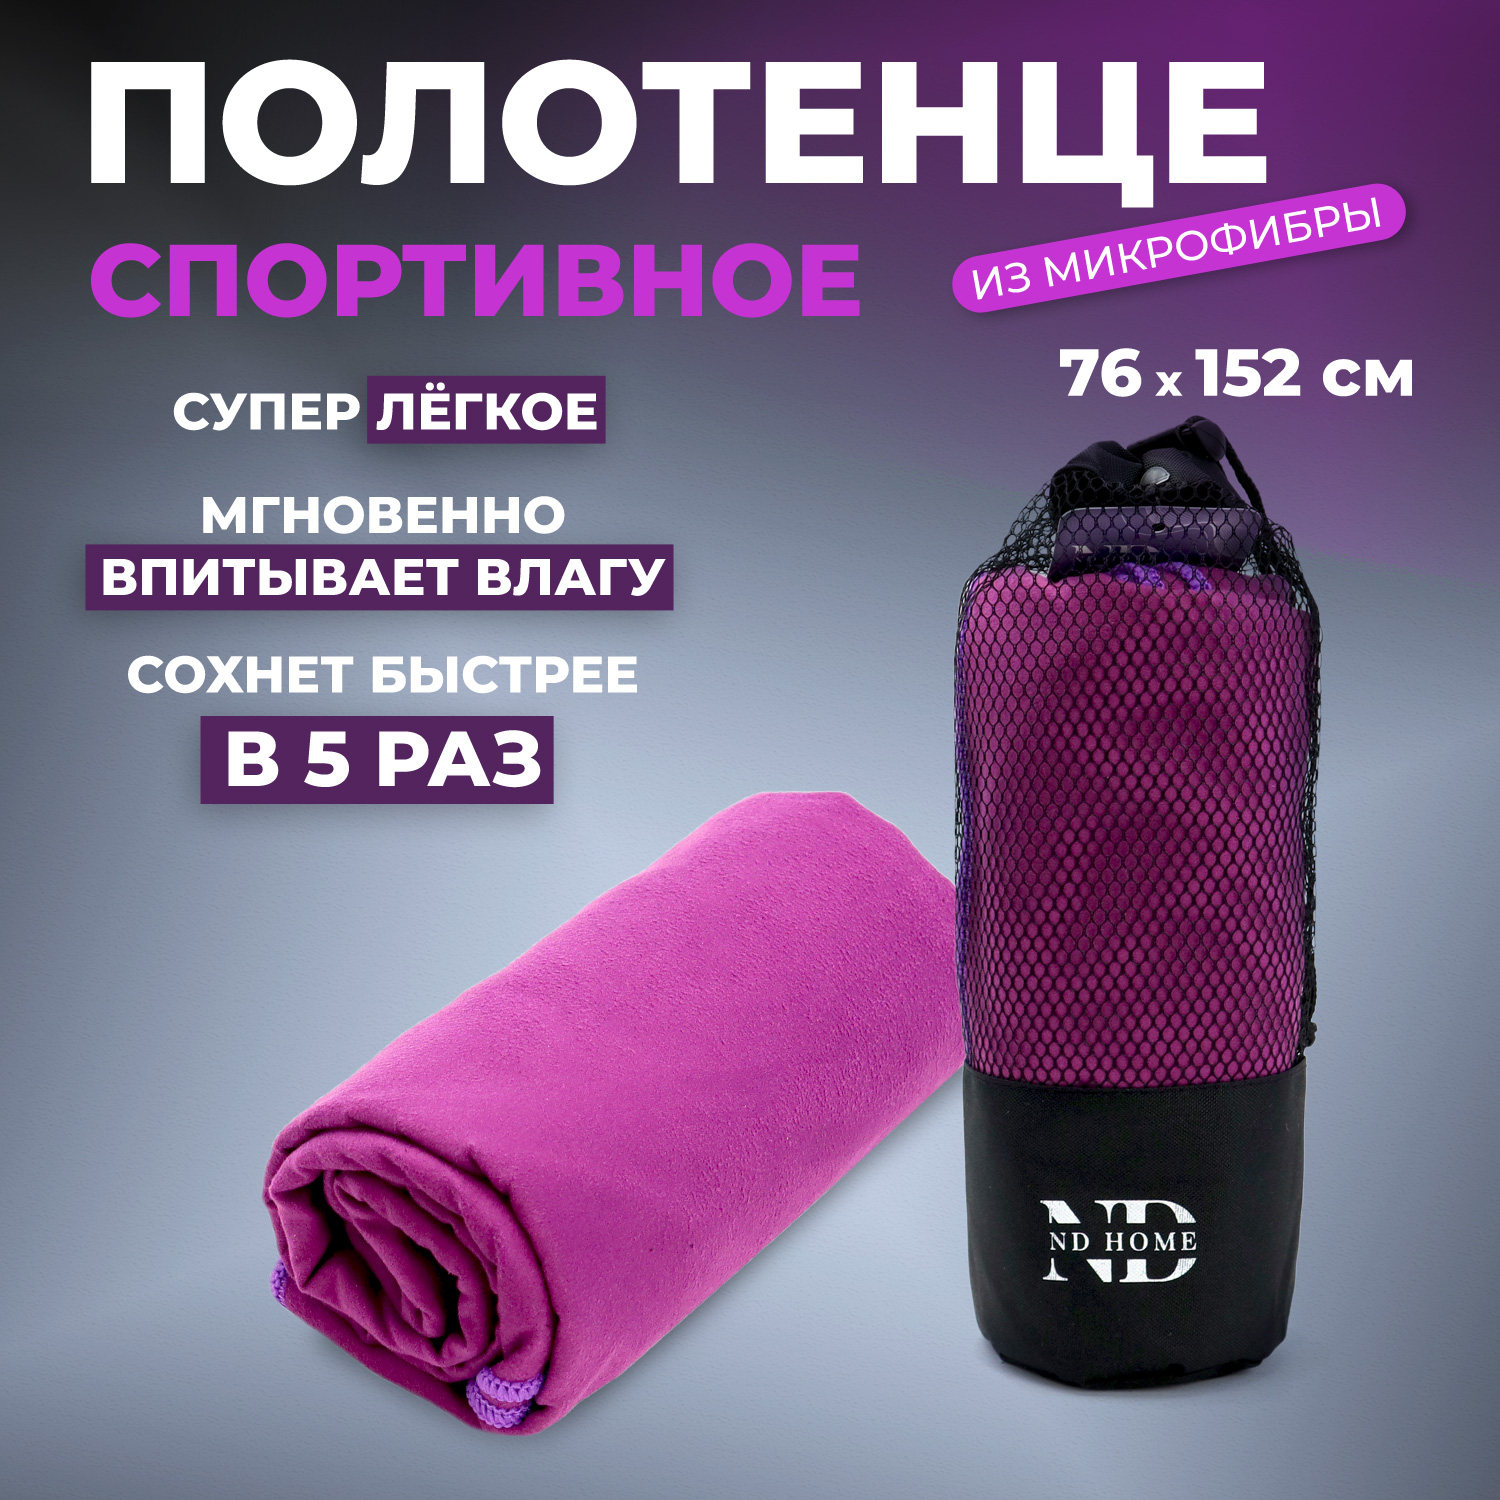 Полотенце спортивное ND Play 310562 микрофибра, 76*152см, фиолетовый - купить в Москве, цены на Мегамаркет | 600017158443